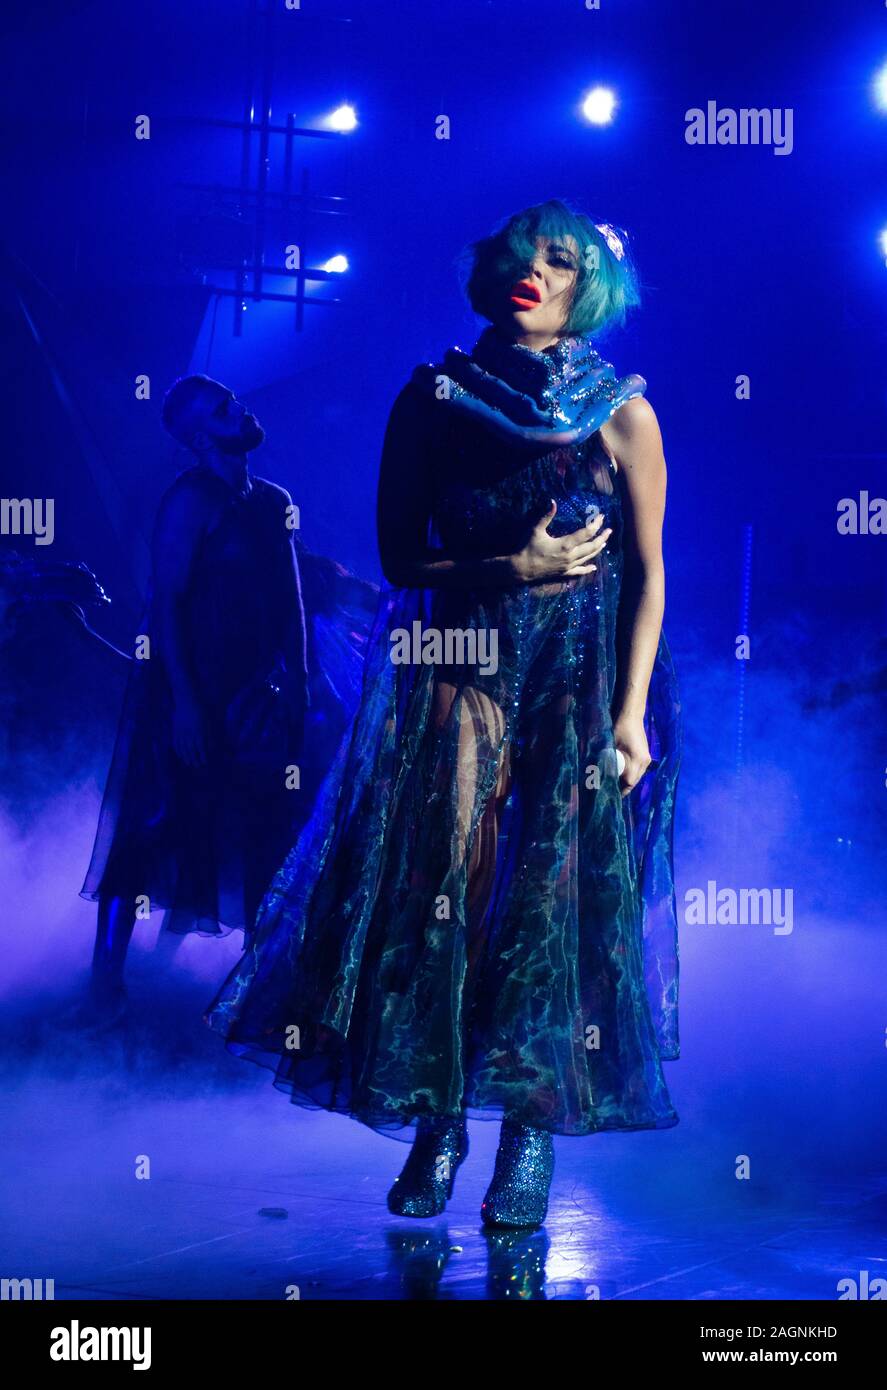 Lady Gaga performs at 'Enigma', sa résidence à Las Vegas Le parc MGM Theatre, Parc MGM, Las Vegas, NV, USA, Octobre 23, 2019 Banque D'Images